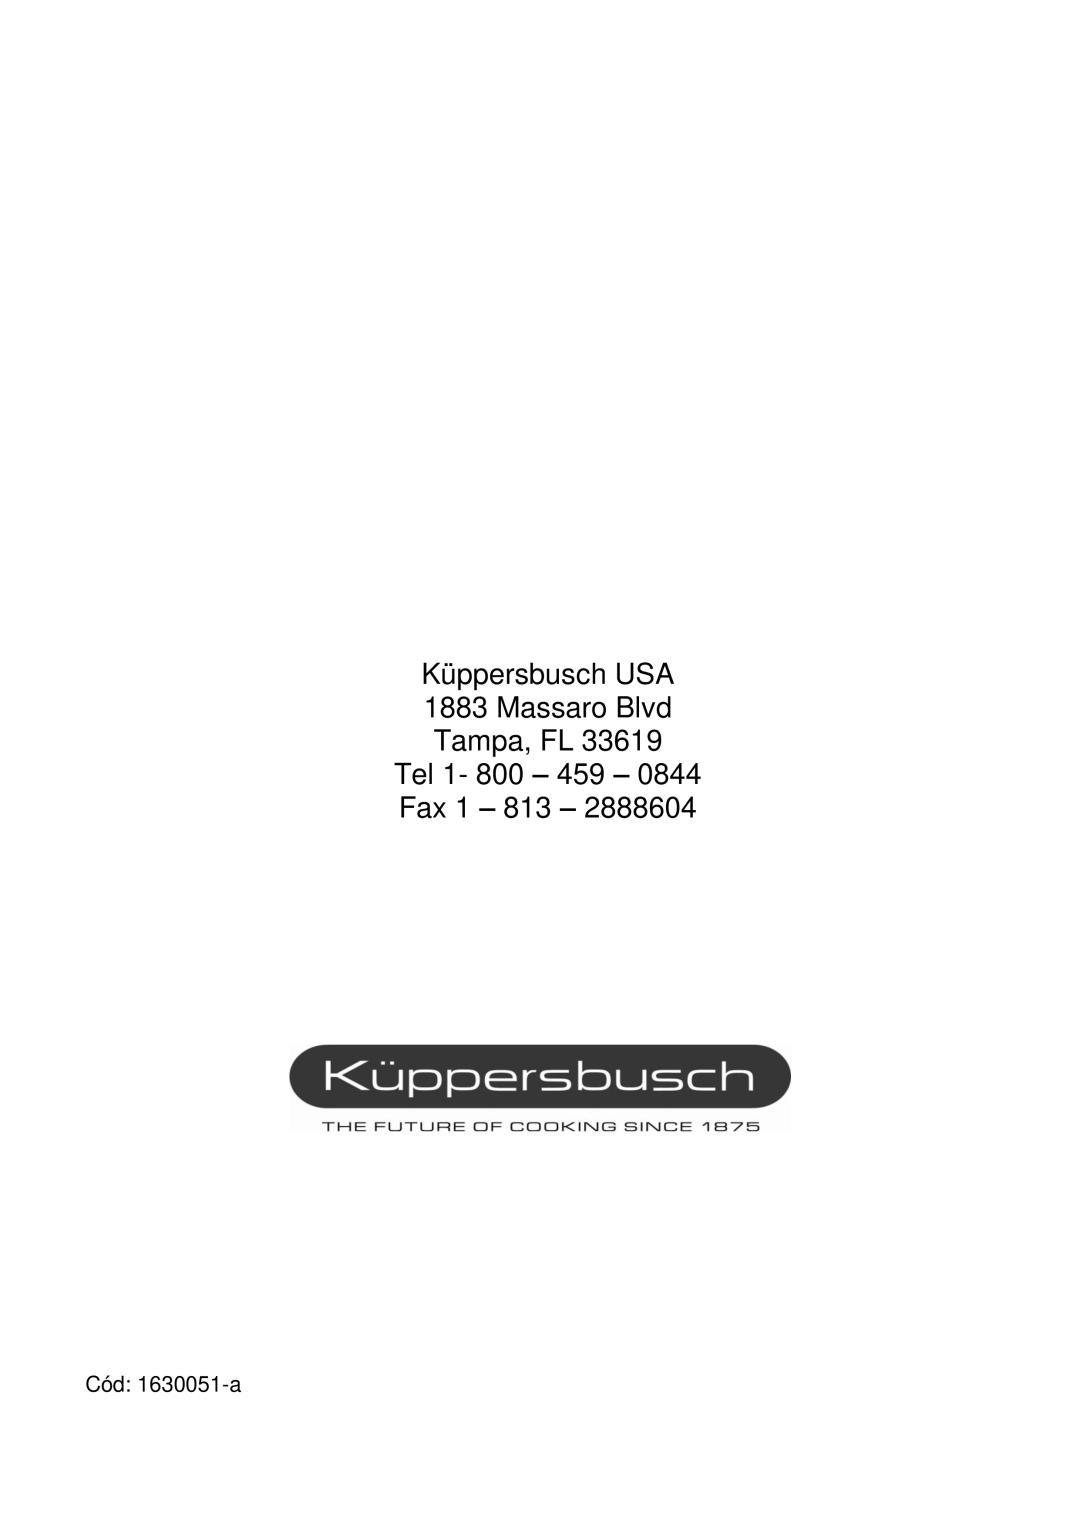 Kuppersbusch USA EMWK1050.1E-UL Küppersbusch USA 1883 Massaro Blvd Tampa, FL, Tel 1- 800 - 459 - Fax 1, Cód: 1630051-a 